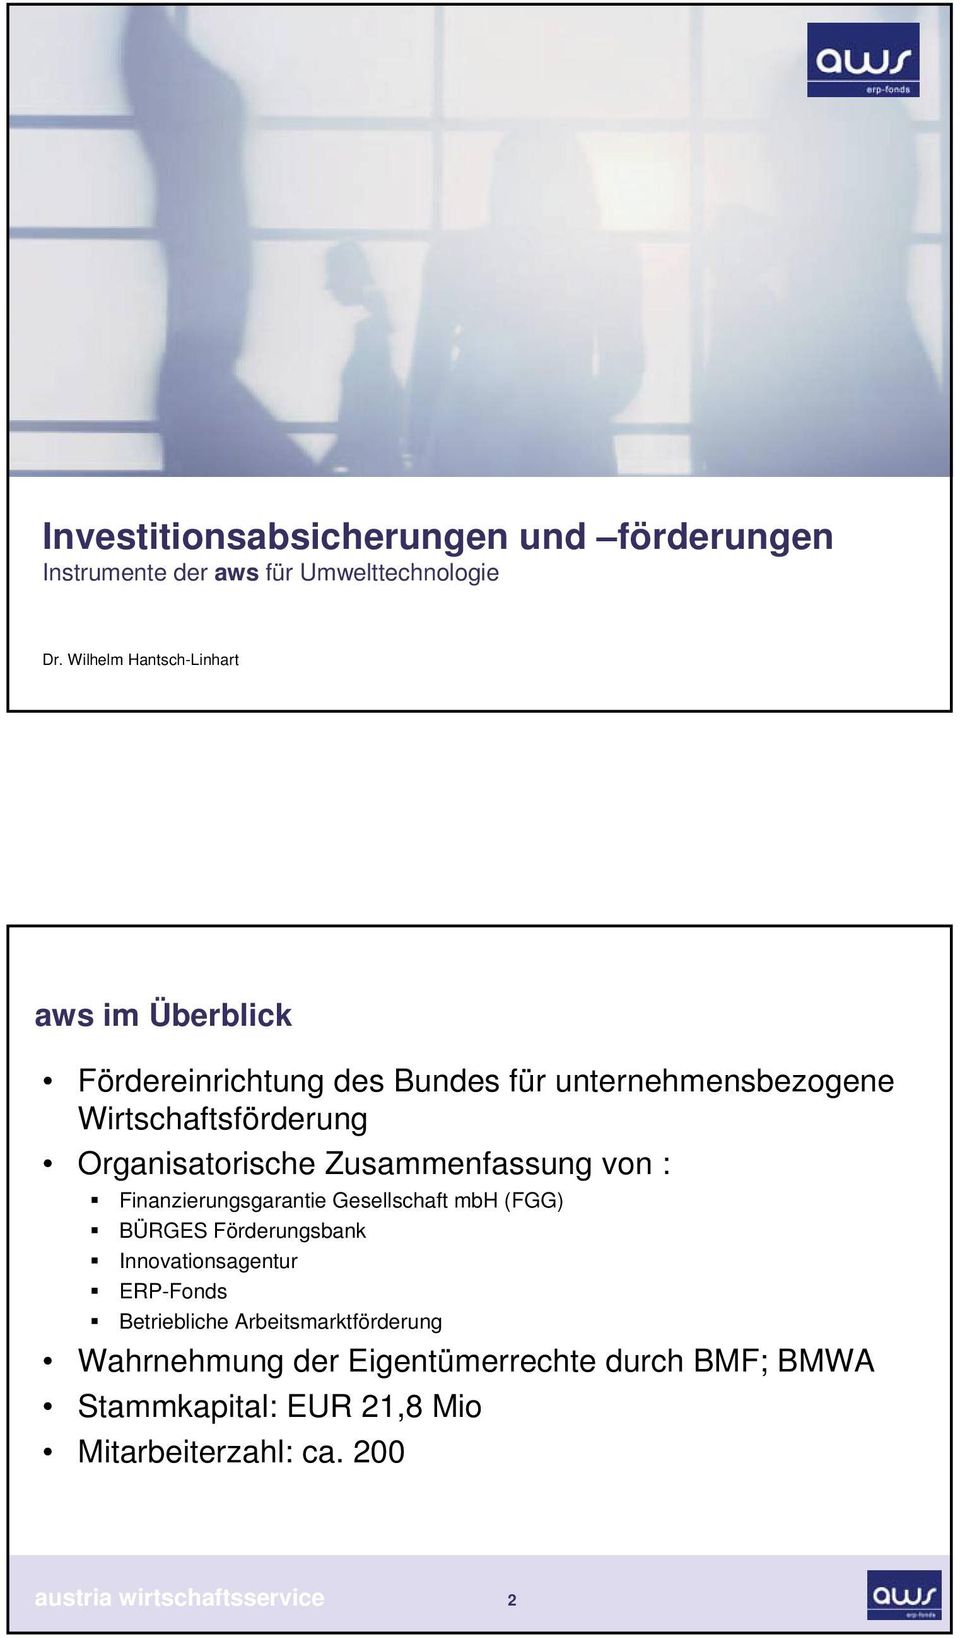 Organisatorische Zusammenfassung von : Finanzierungsgarantie Gesellschaft mbh (FGG) BÜRGES Förderungsbank Innovationsagentur